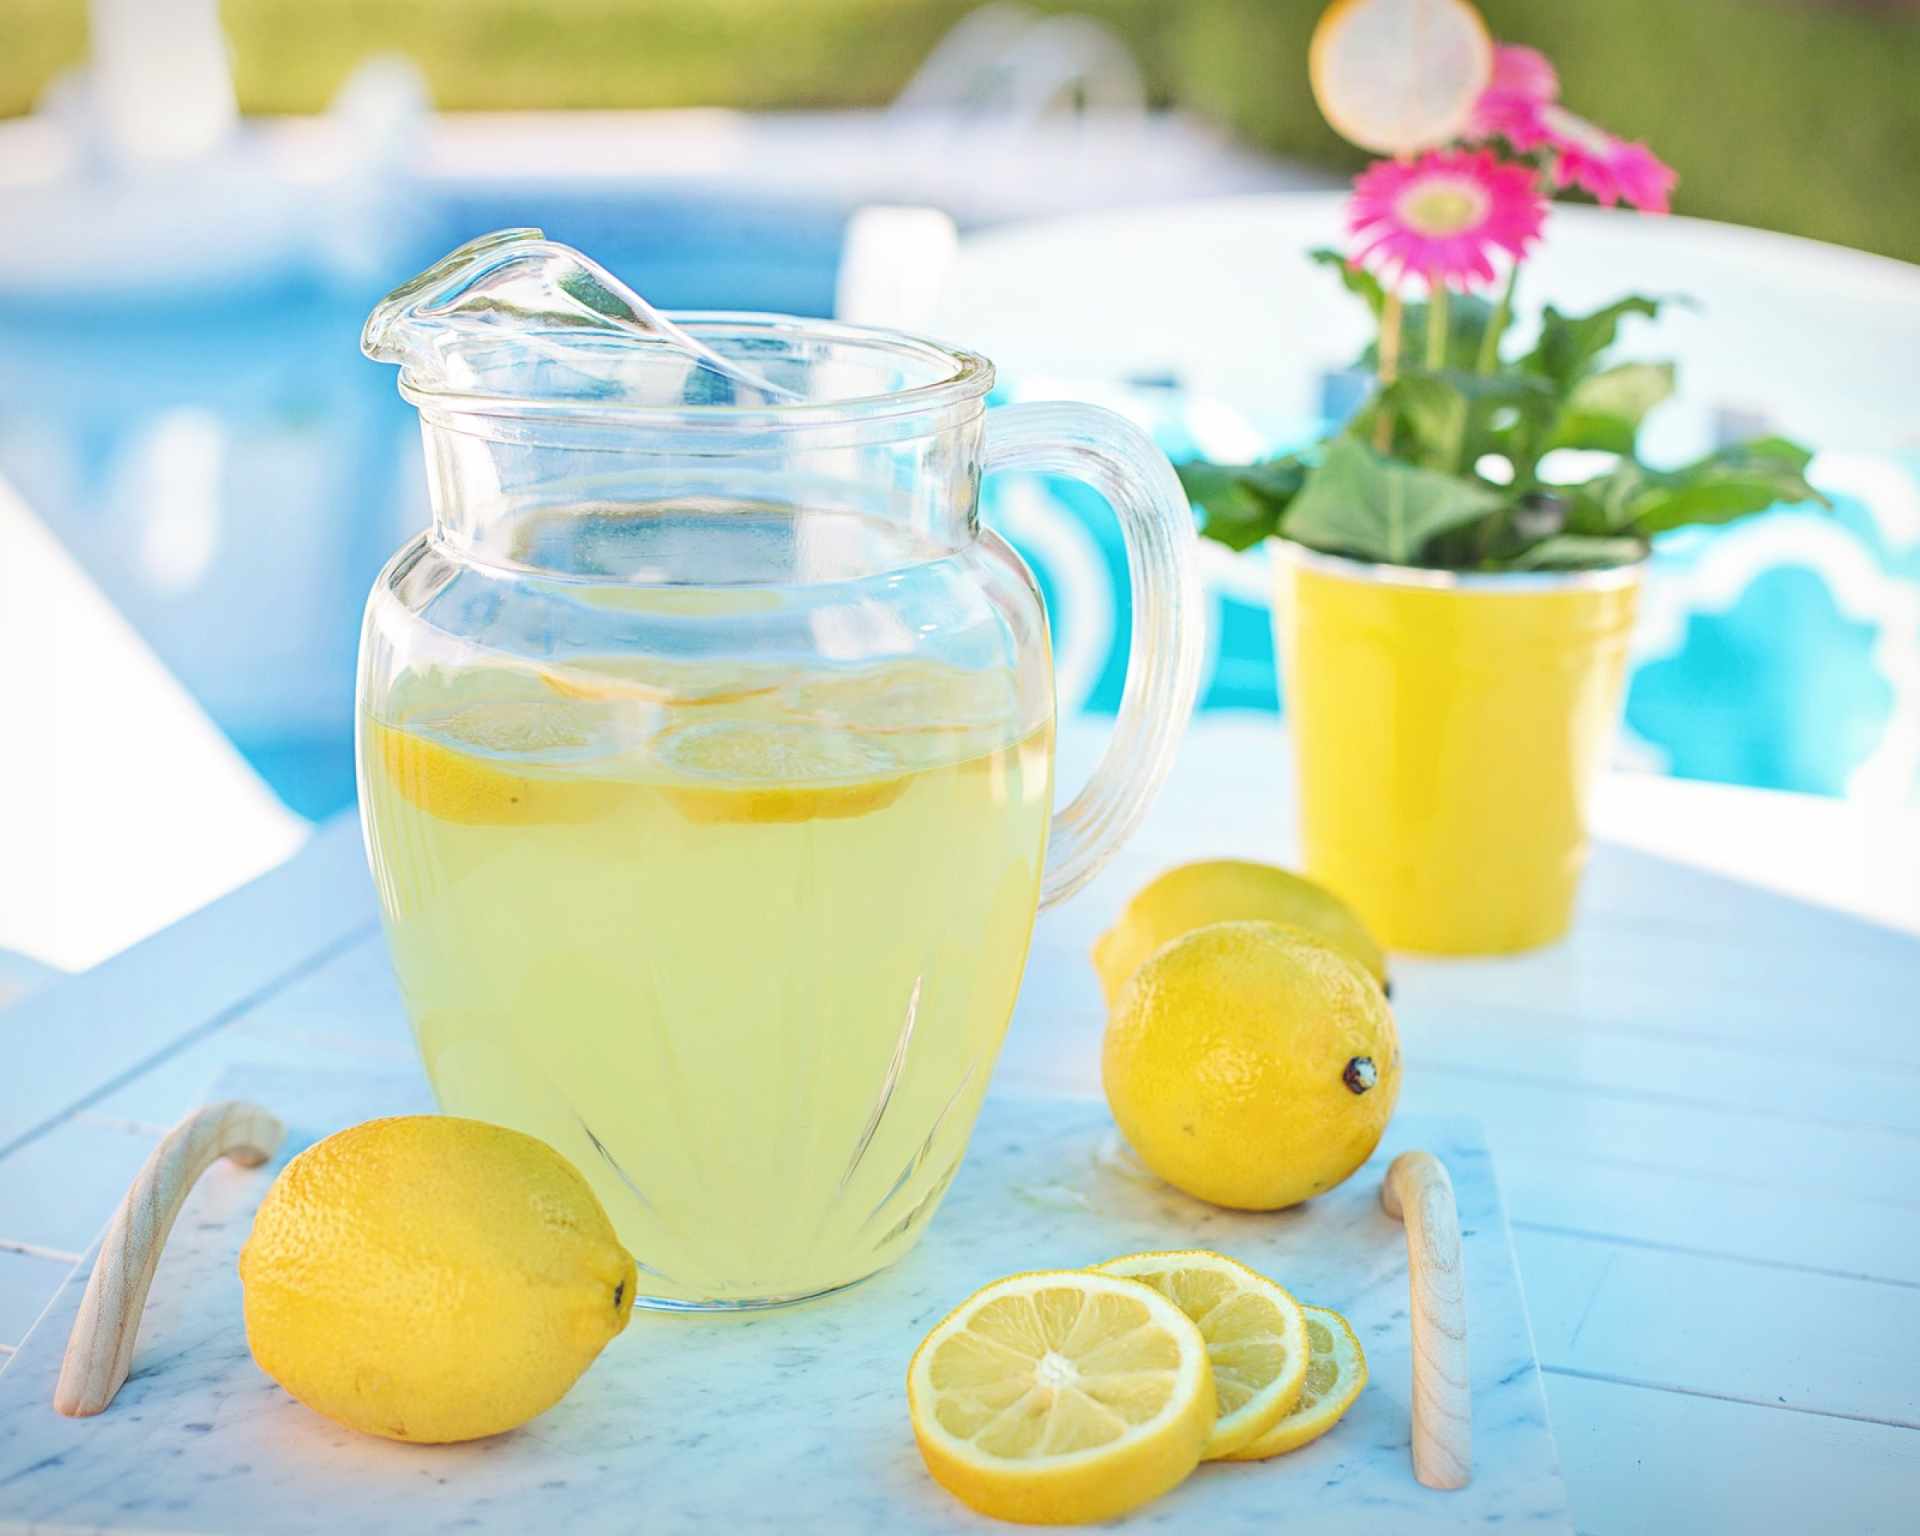 Limonáda z citrónov v džbáne, citróny celé aj nakrájané v pozadí